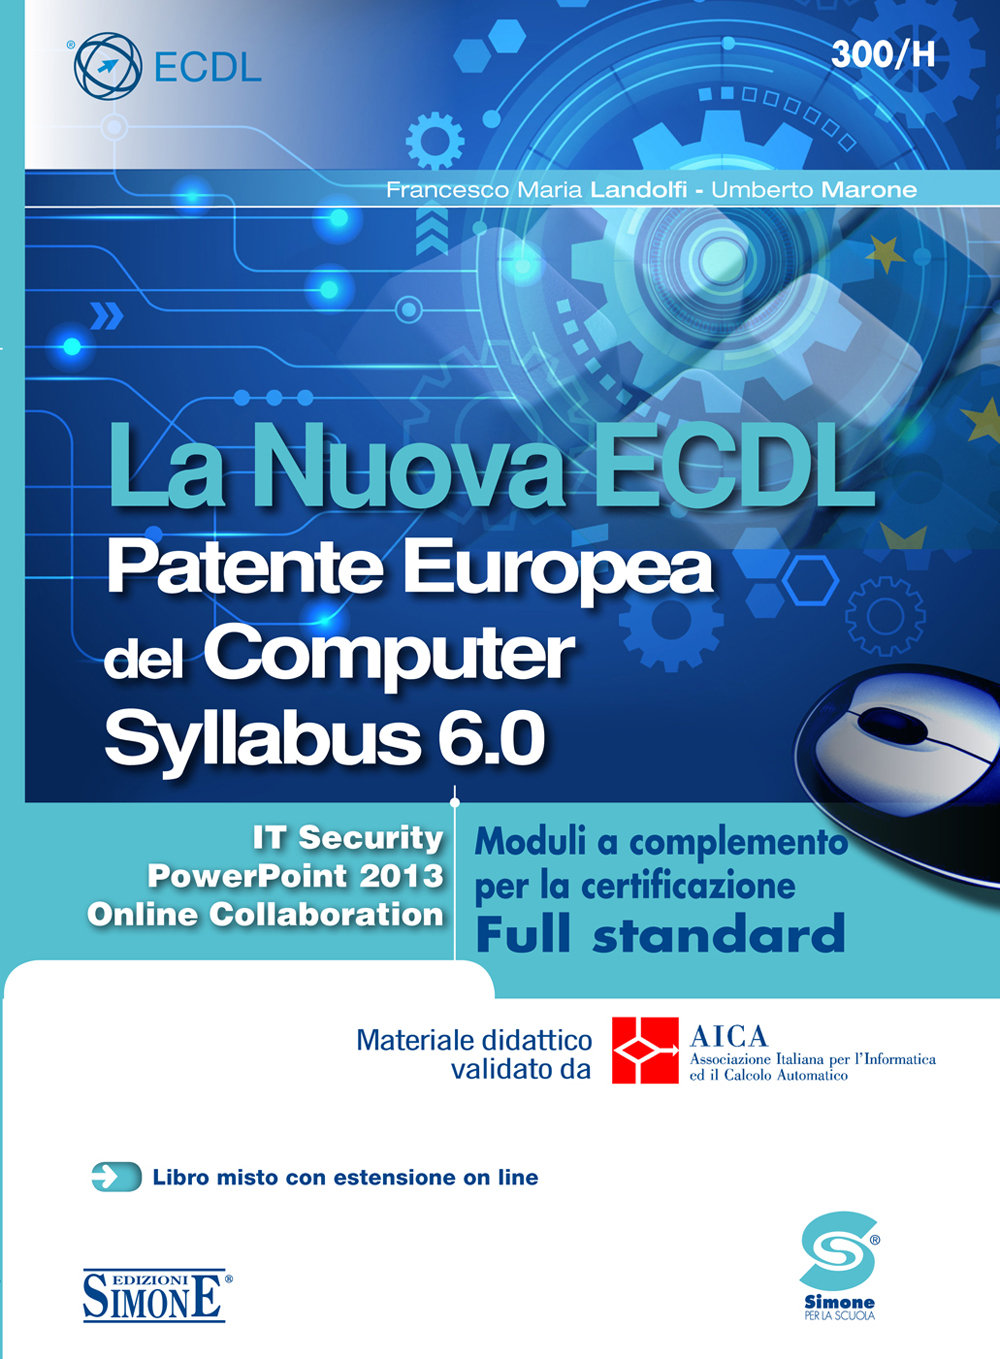 La Nuova ECDL Patente Europea del Computer Syllabus 6.0 - Moduli a completamento per la certificazione Full standard - 300/H